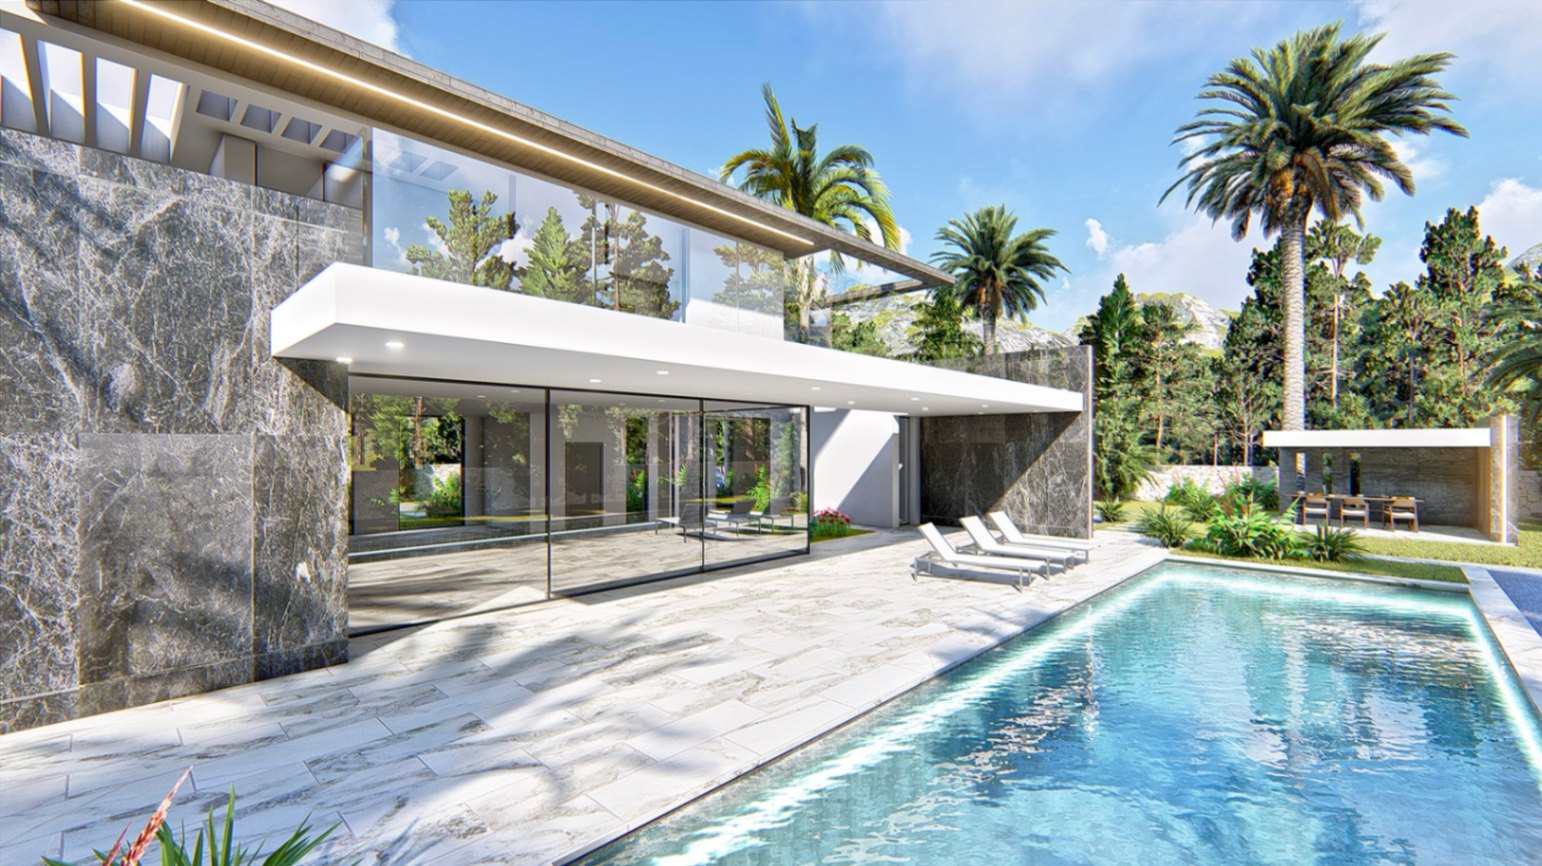 Luxe moderne villa met 5 slaapkamers in exclusief Javea: Costa Blanca wonen op zijn best!